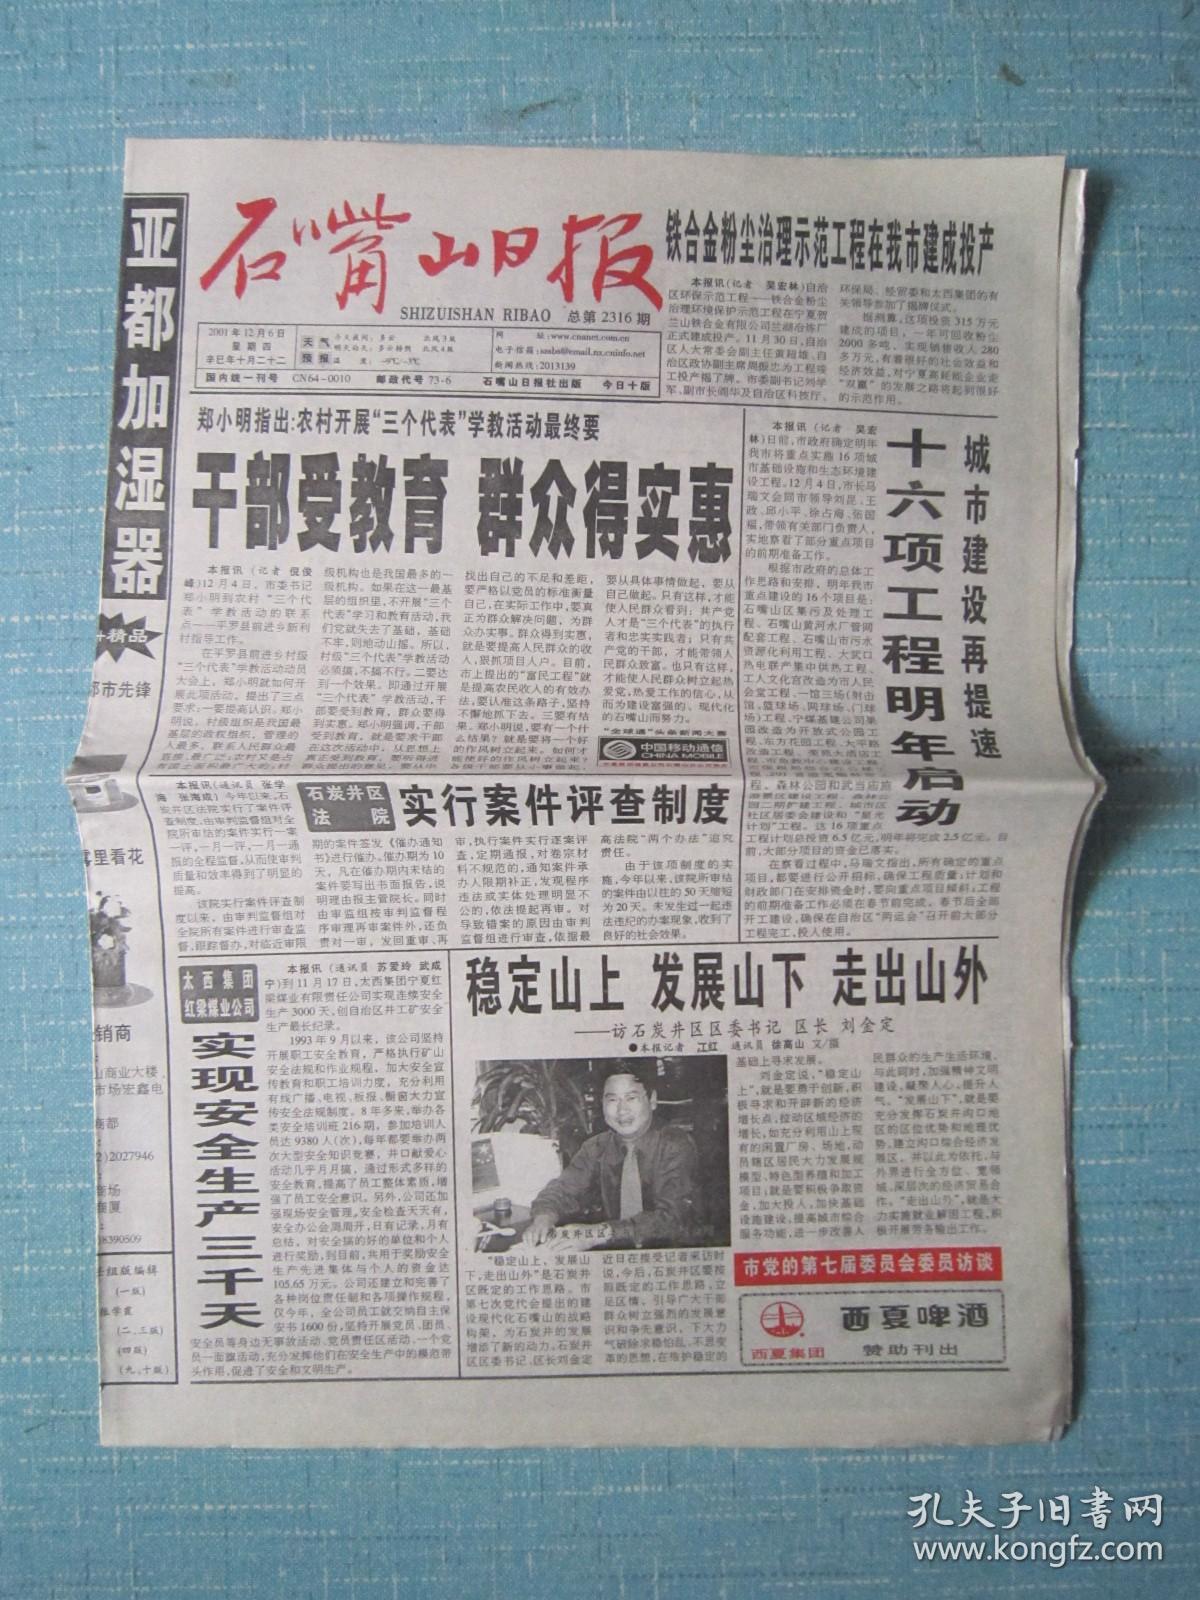 宁夏普报——石嘴山日报 2001.12.6日